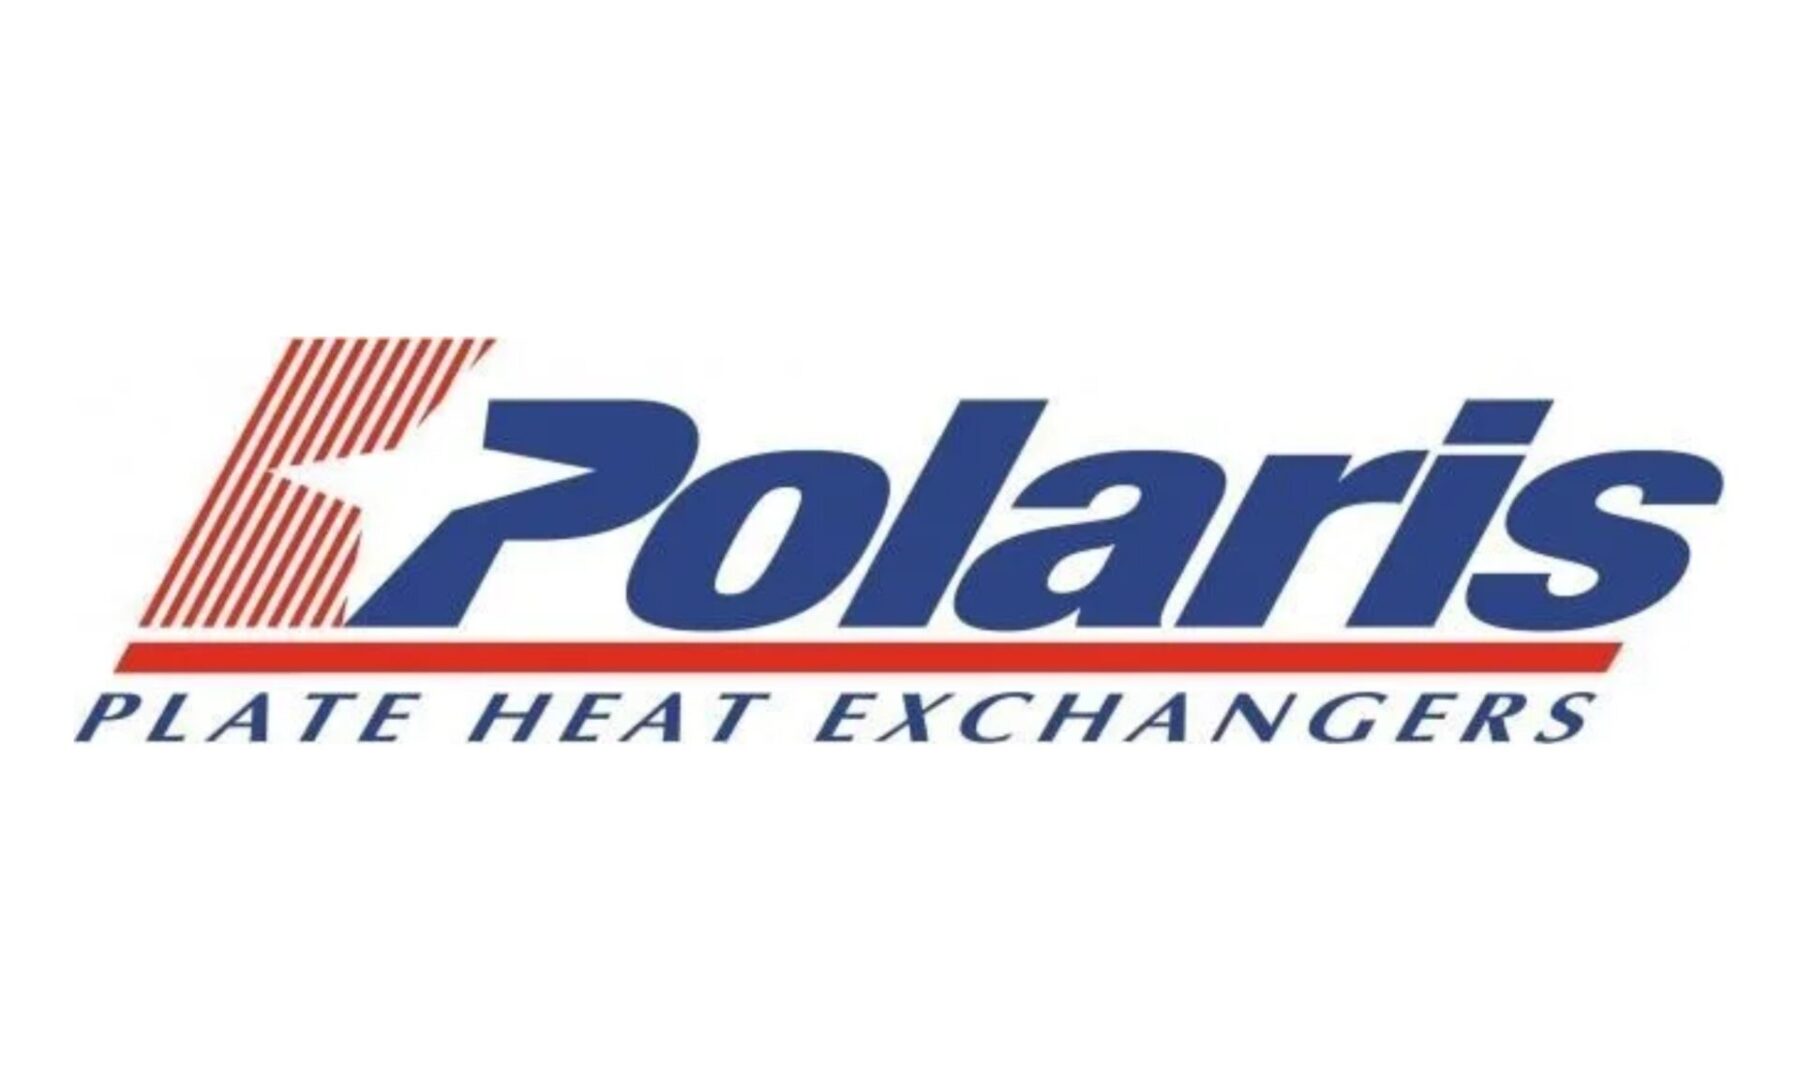 A logo of polaris is shown.